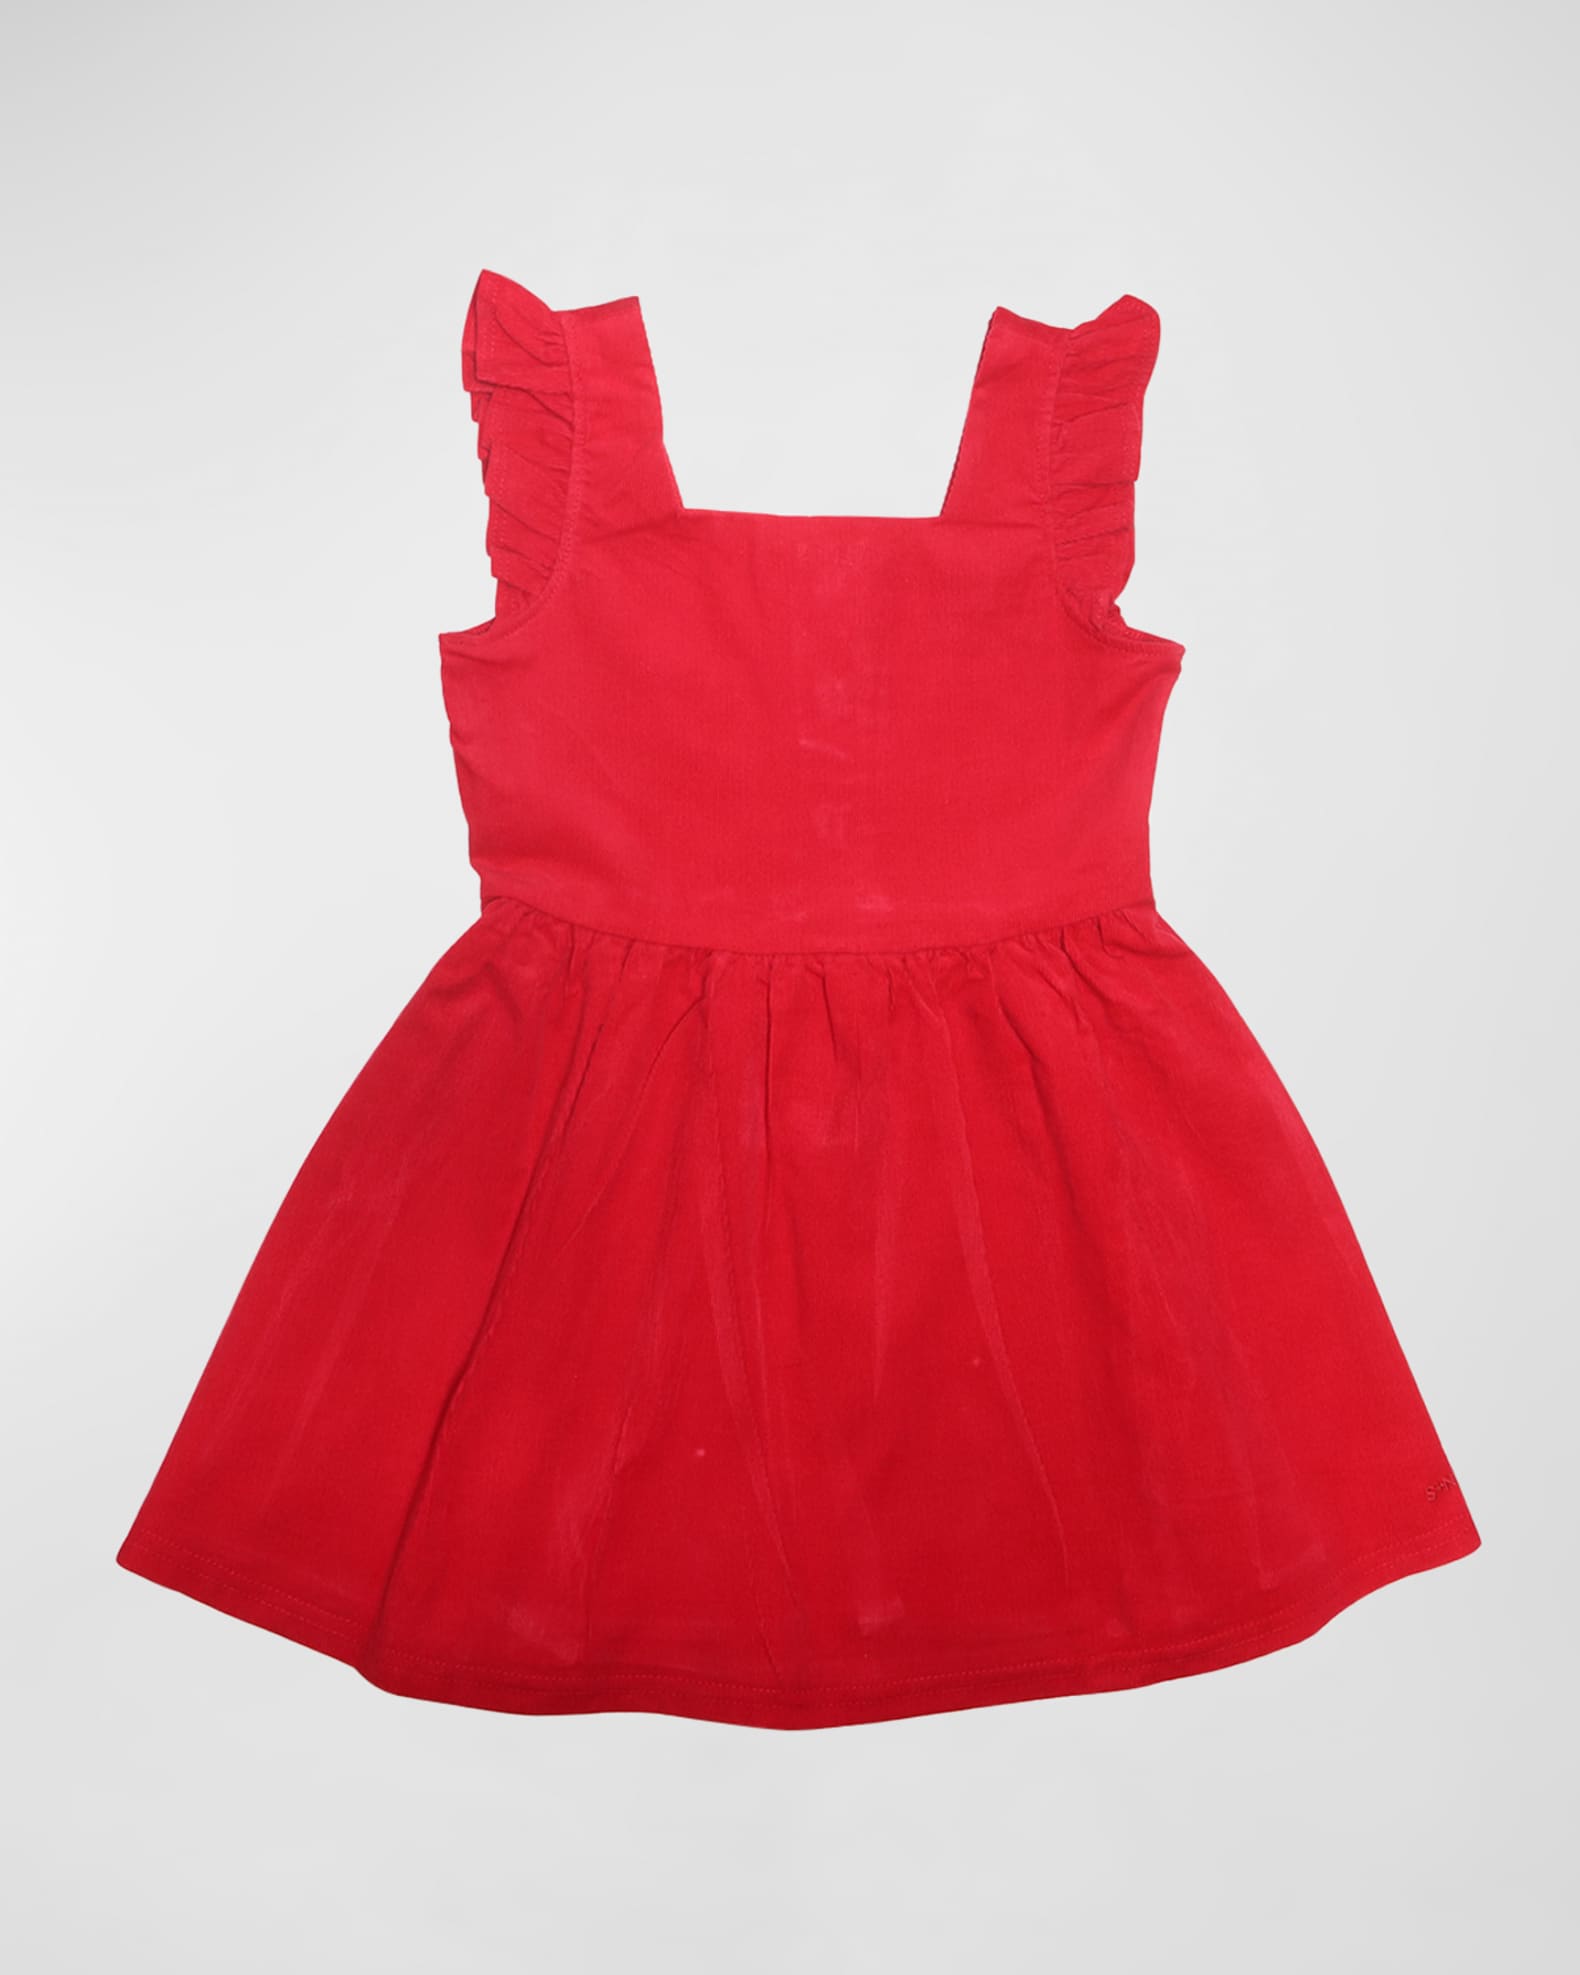 Pippa red gingham dress, Little girls' smocked dresses